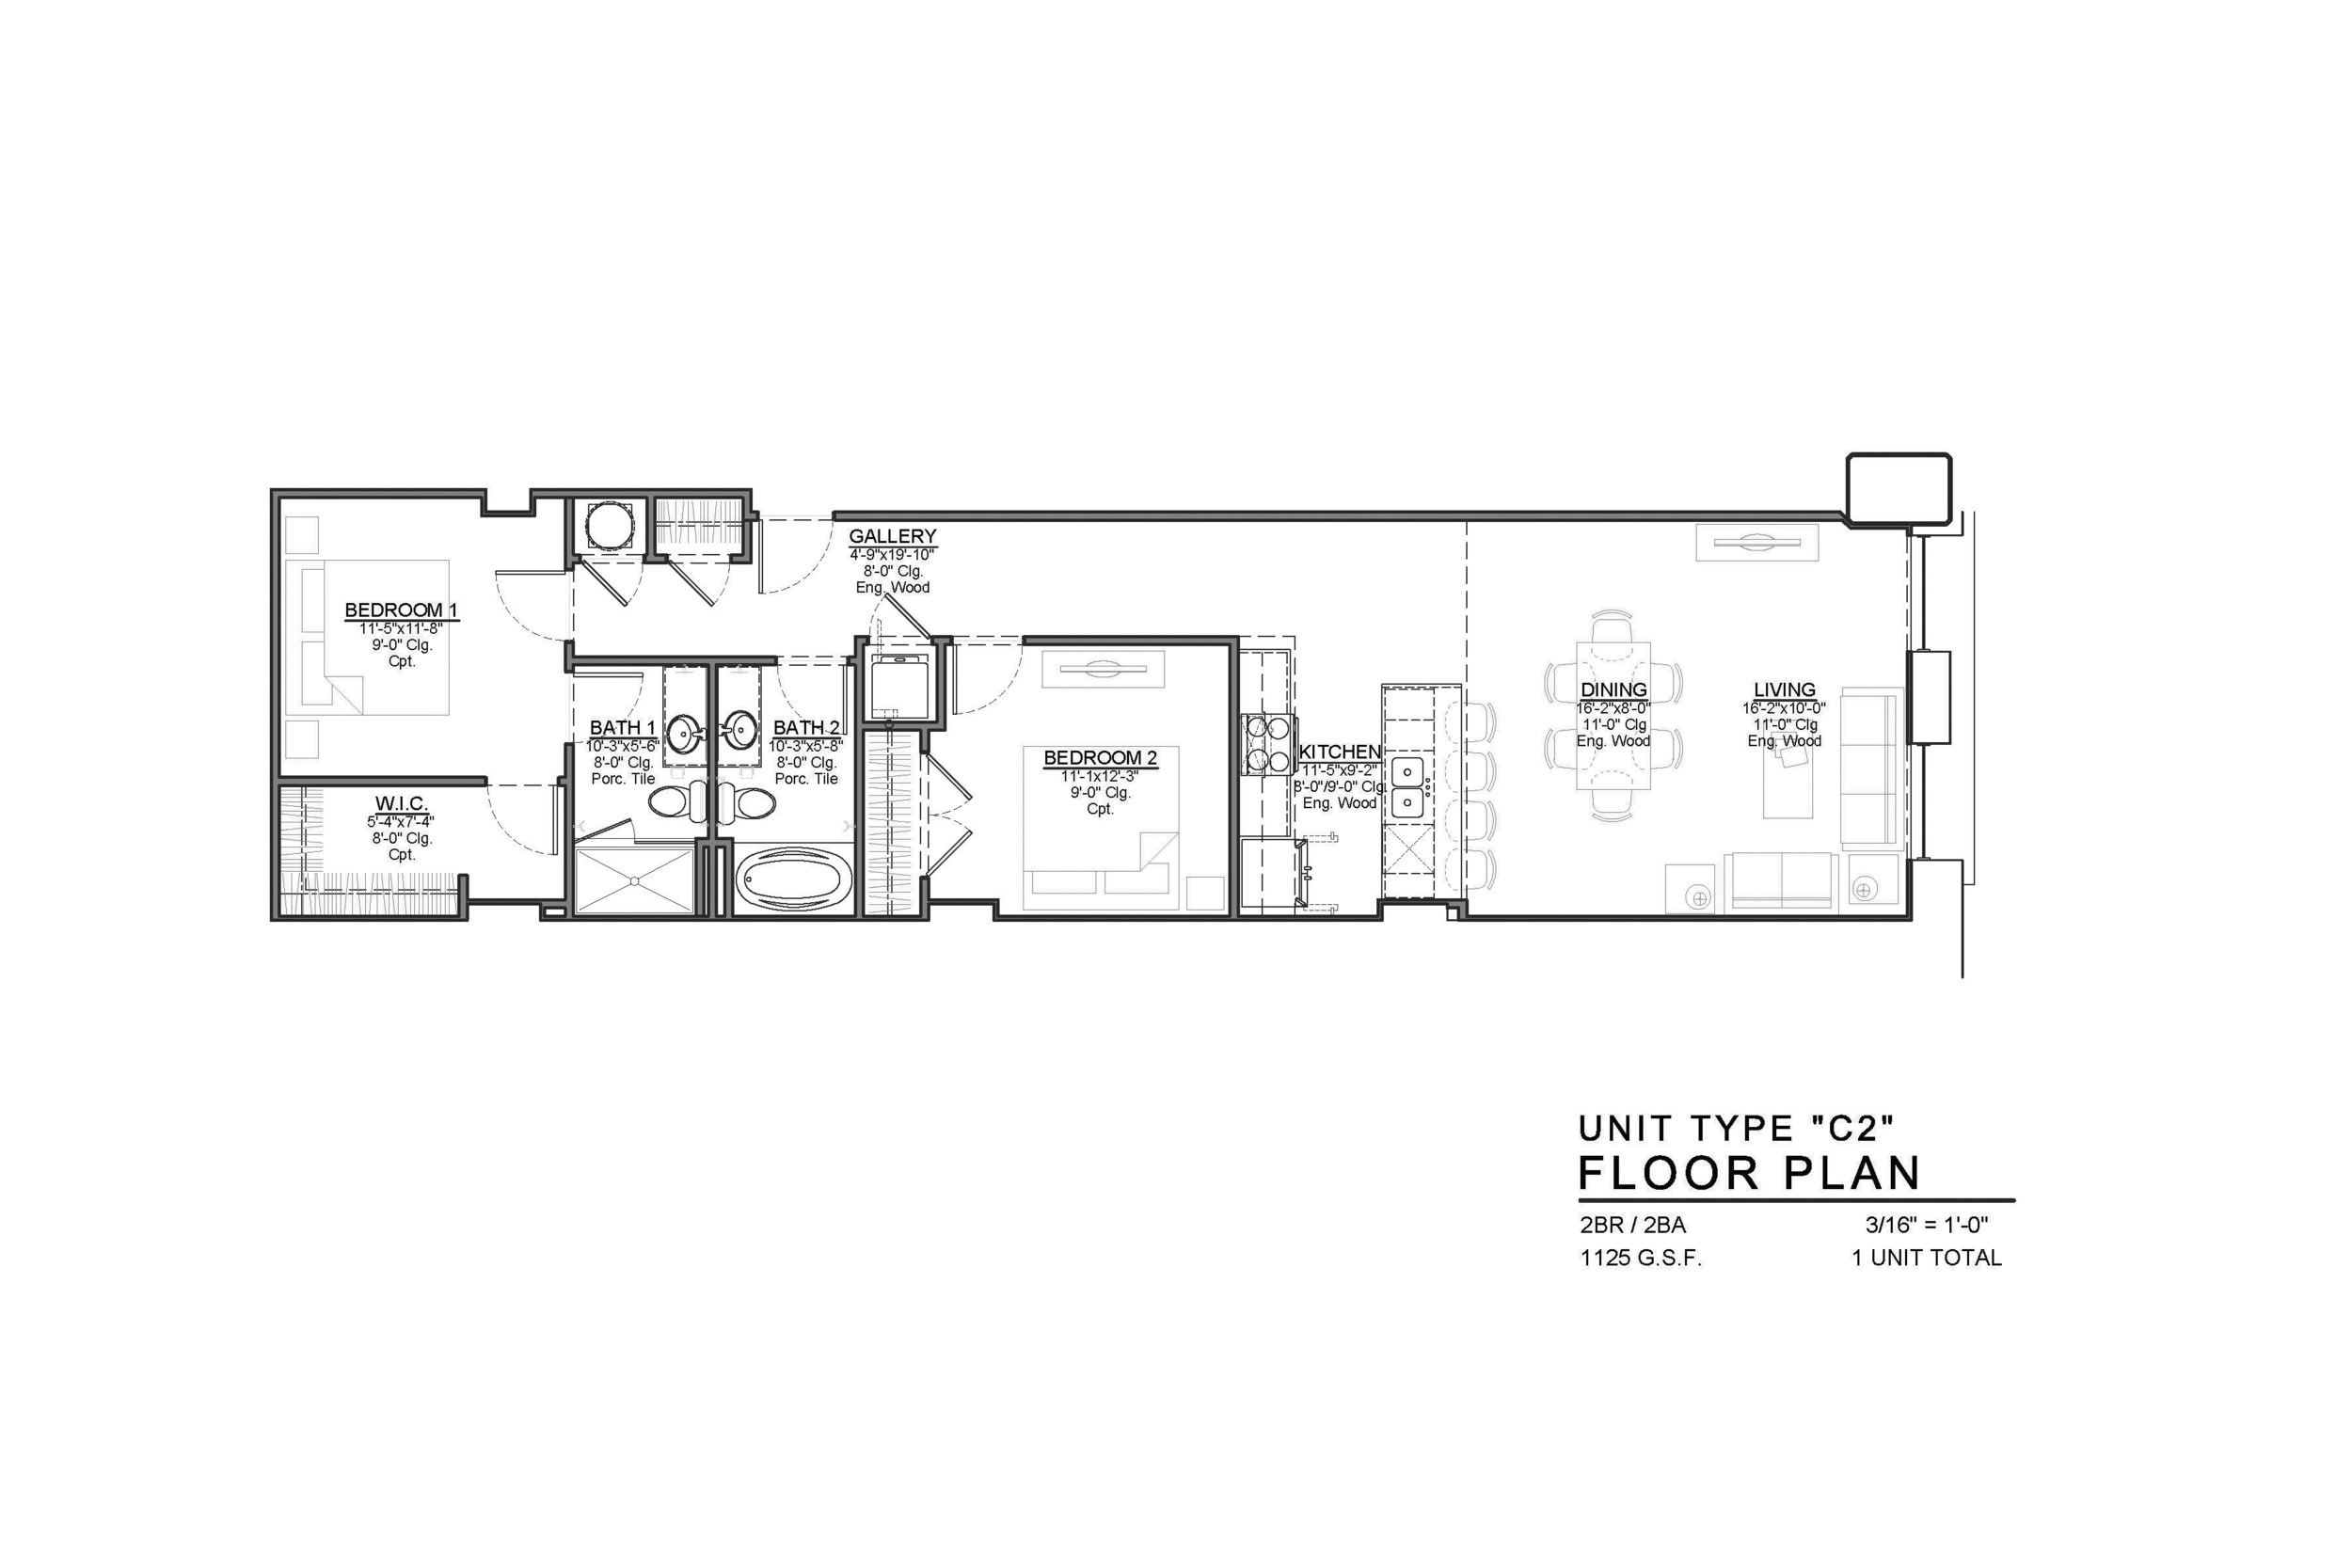 C2 FLOOR PLAN: 2 BEDROOM / 2 BATH